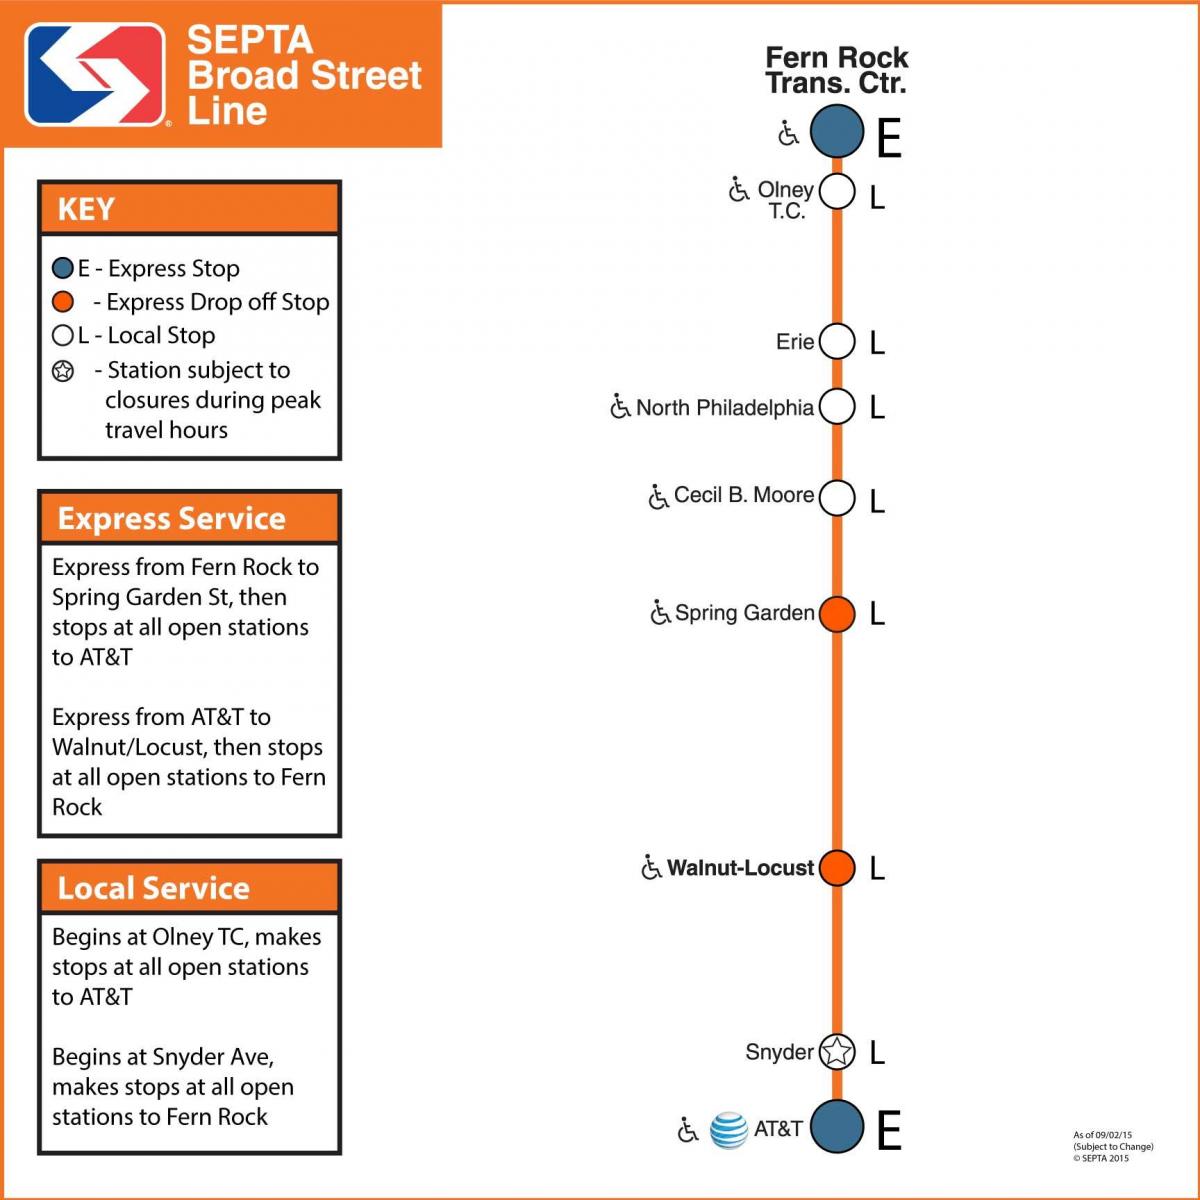 mapa Septa broad street line